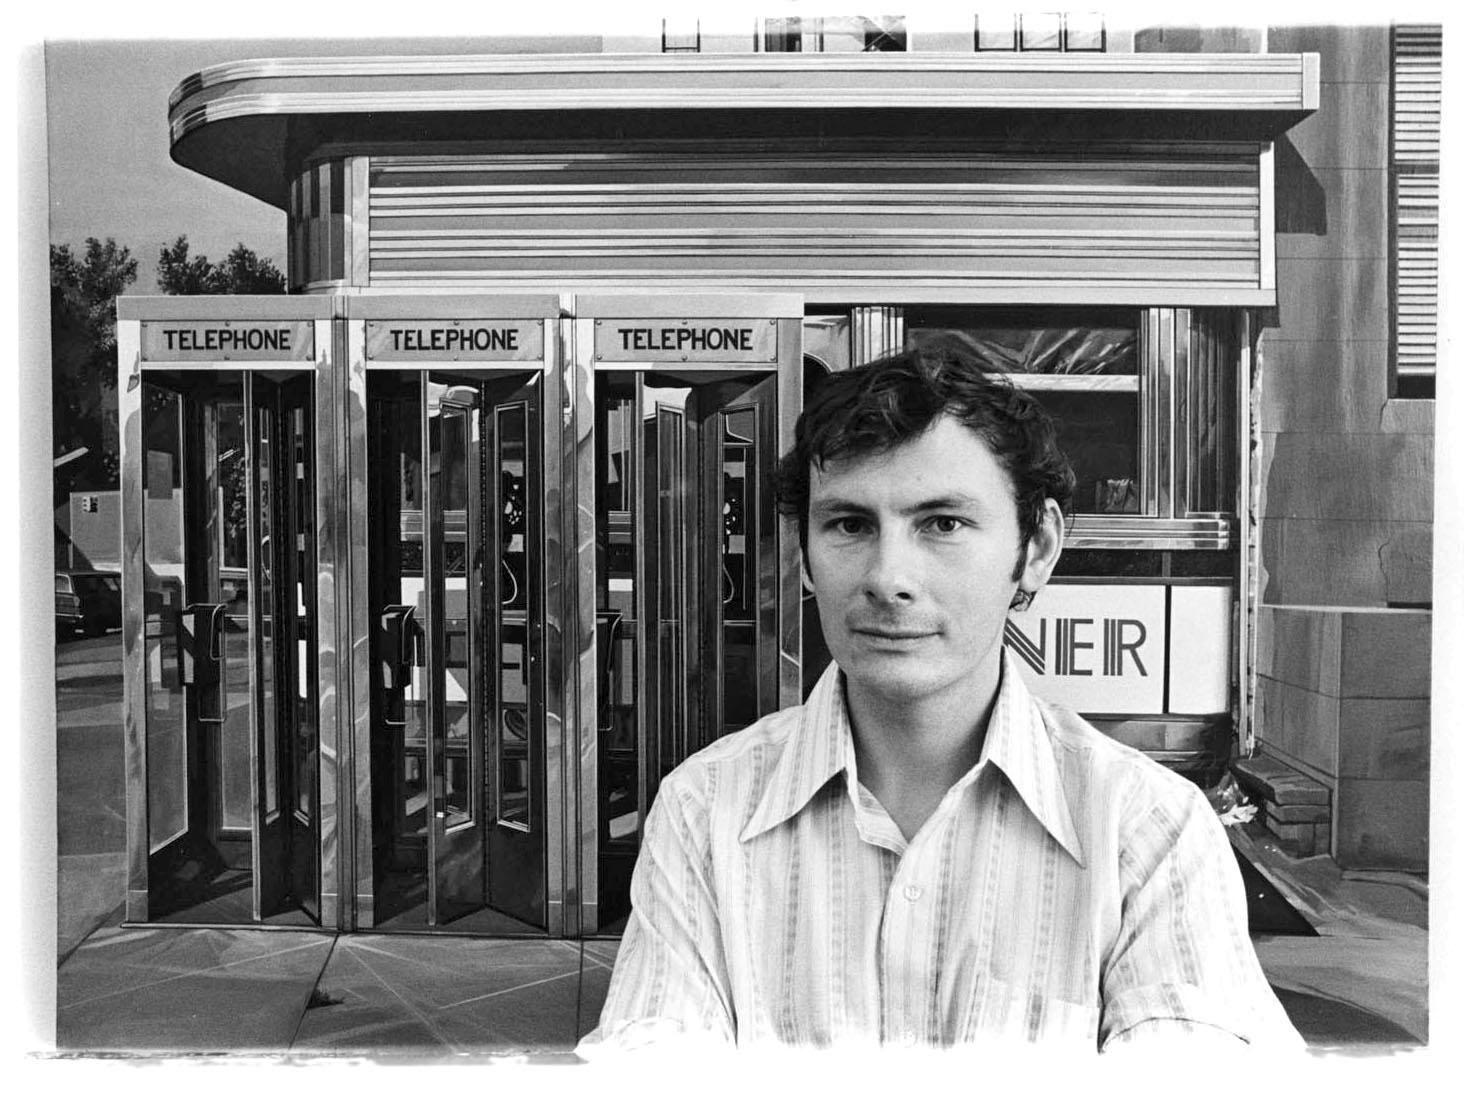 11 x 14" alte Silbergelatinefotografie des fotorealistischen Malers Richard Estes in seinem Atelier im Jahr 1971. Kommt direkt aus dem Jack Mitchell Archiv mit einem Echtheitszertifikat.

 Jack Mitchells (1925-2013) umfangreiches fotografisches